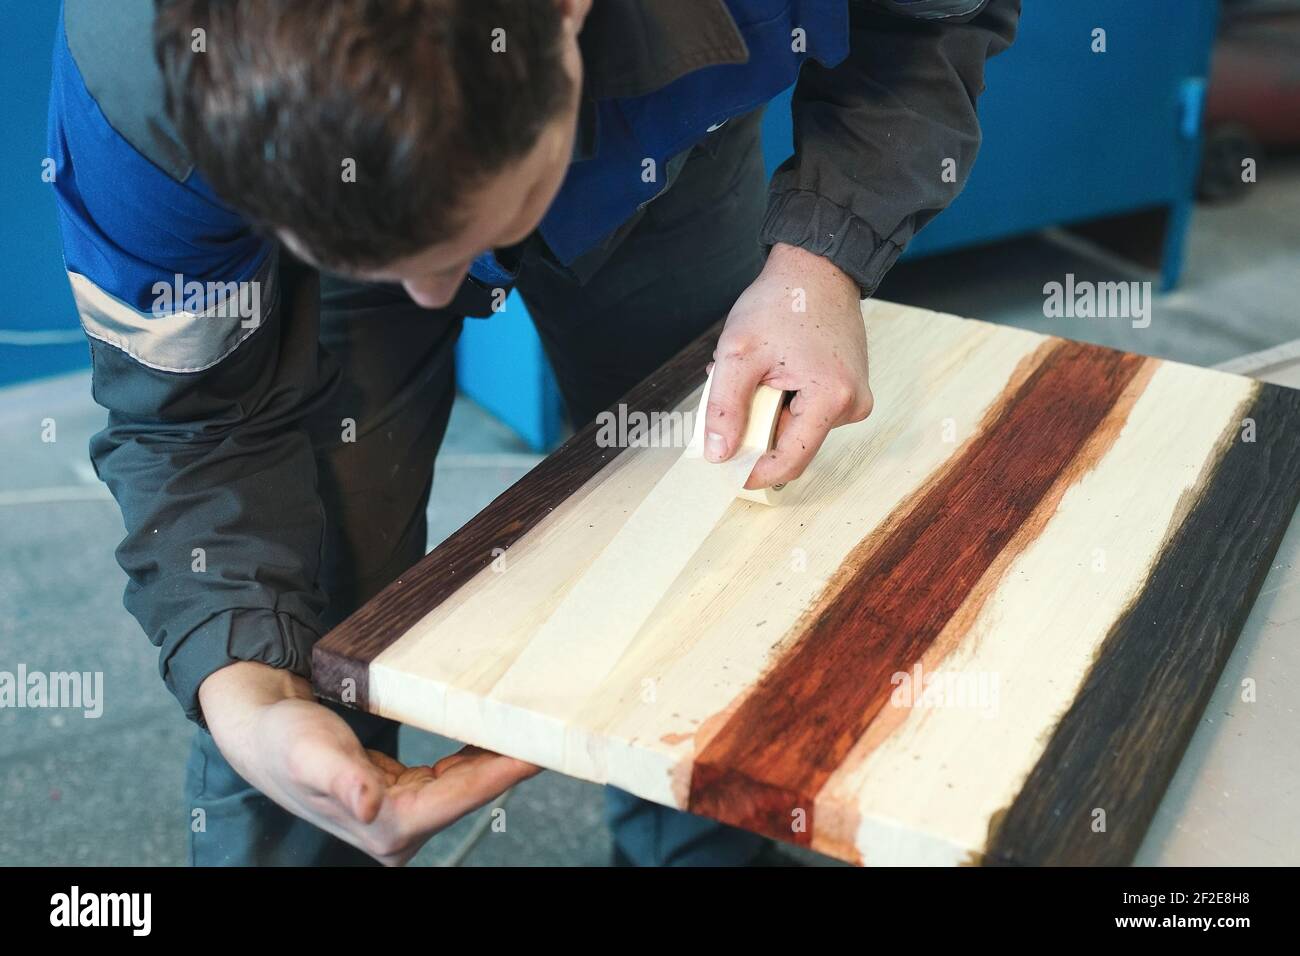 Un ébéniste travaille avec du bois dans un atelier de menuiserie. Un jeune travailleur d'apparence caucasienne fait un comptoir. Banque D'Images